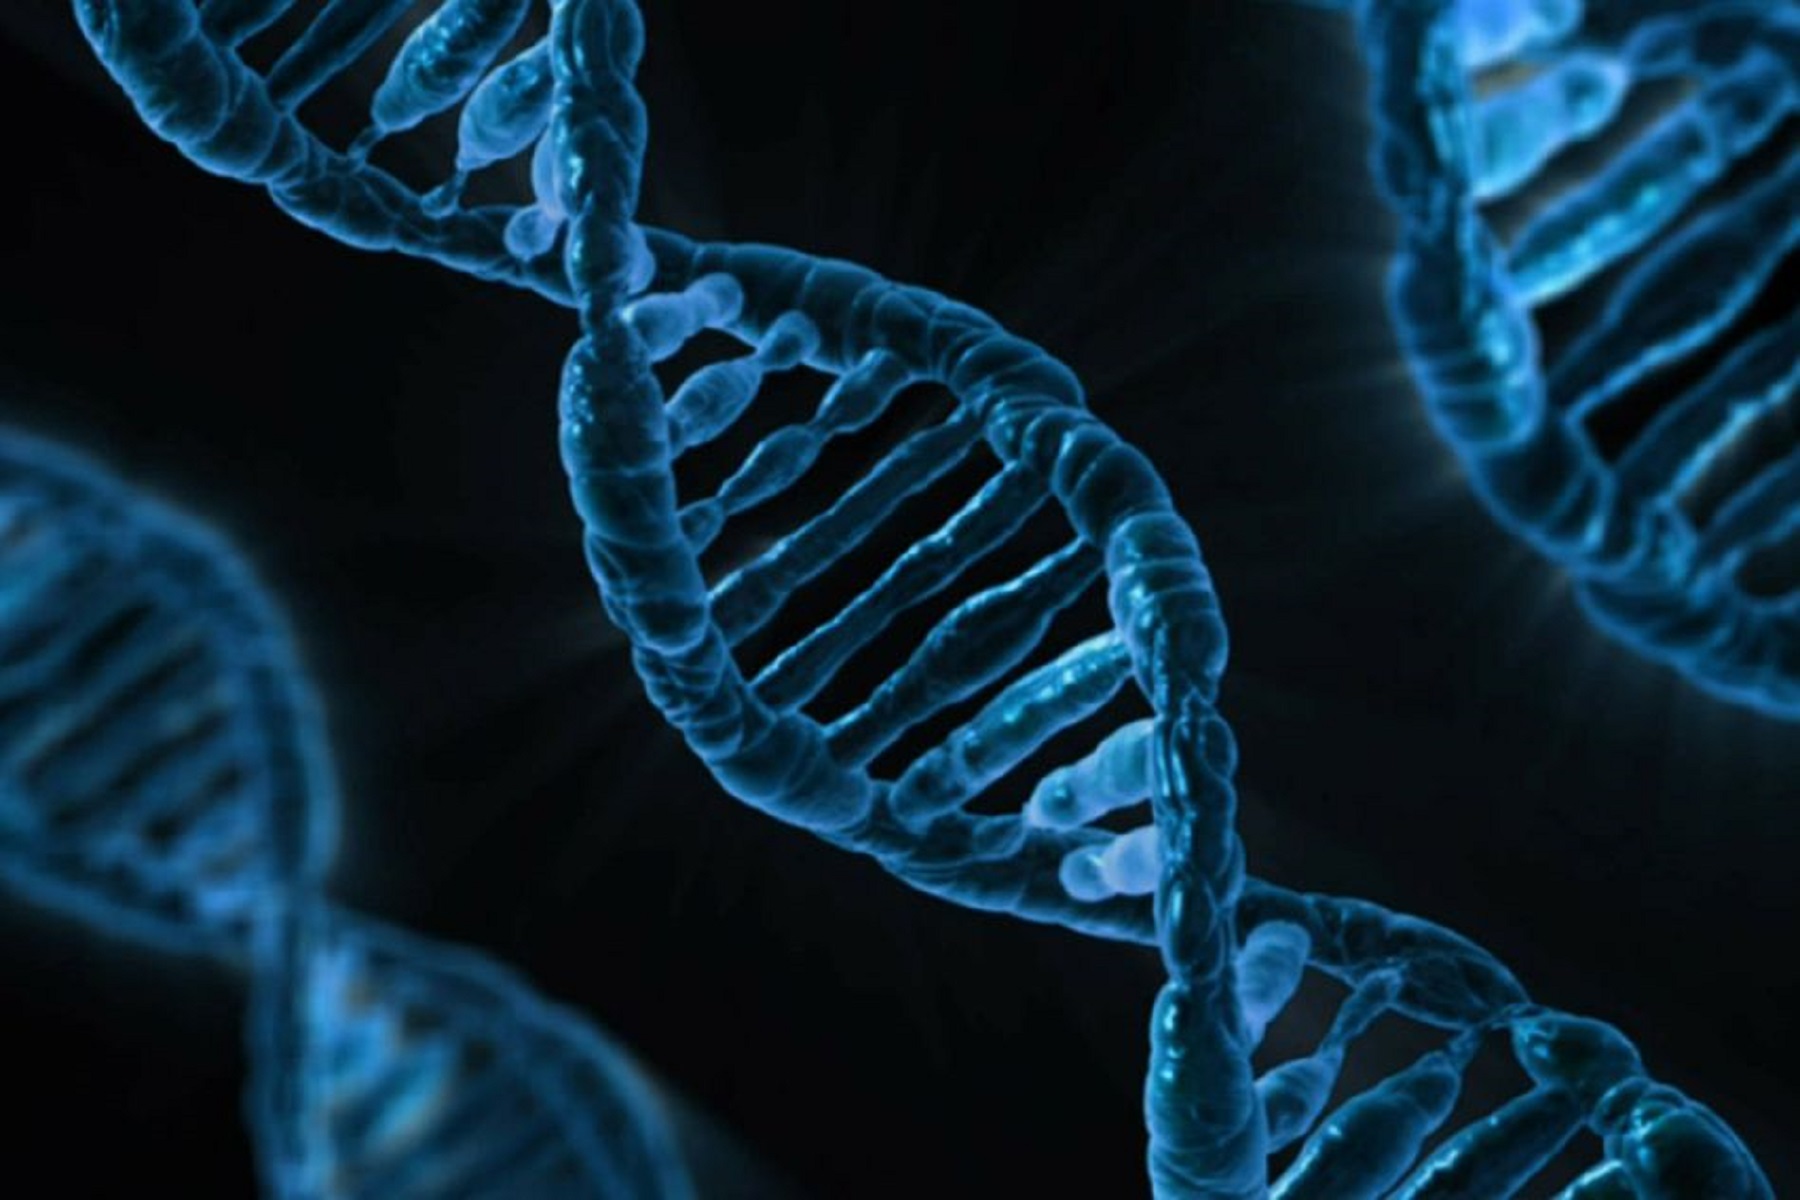 Σύνδρομο Rett & MECP2: Ερευνητές εντοπίζουν στοιχεία DNA που επηρεάζουν διανοητικές αναπηρίες